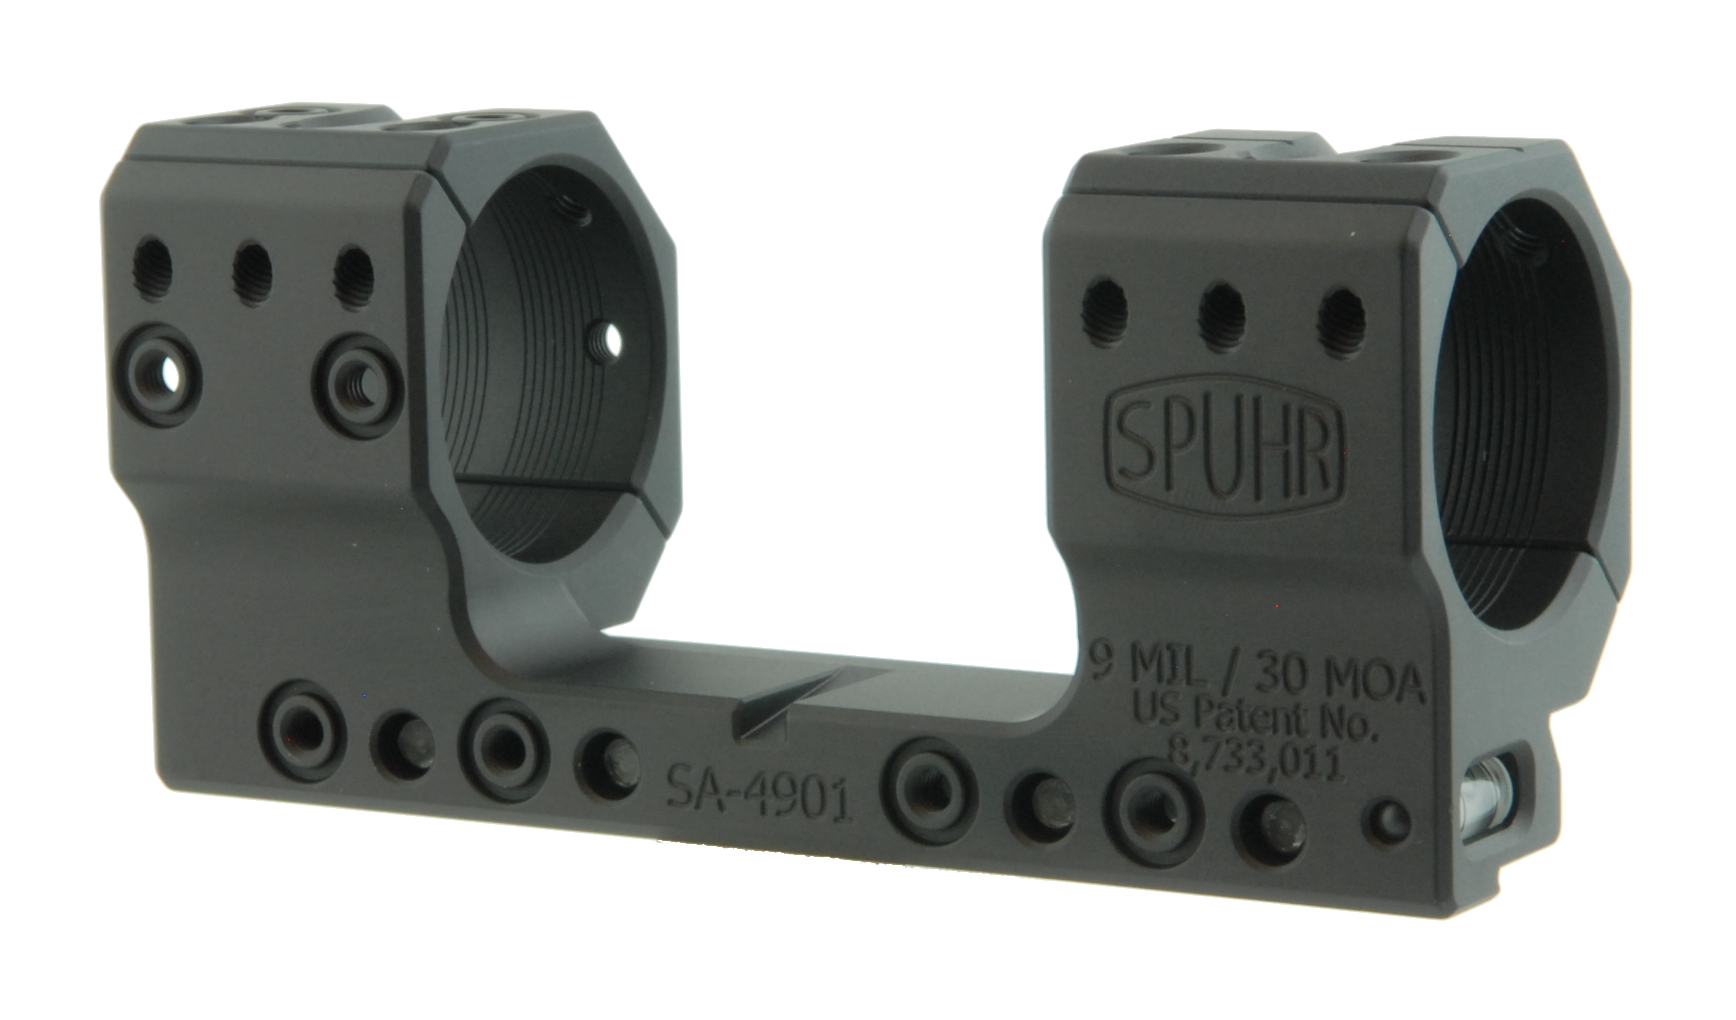 Тактический кронштейн SPUHR D34мм для установки на 12mm (Accuracy), H35мм, наклон 9MIL/ 30.9MOA